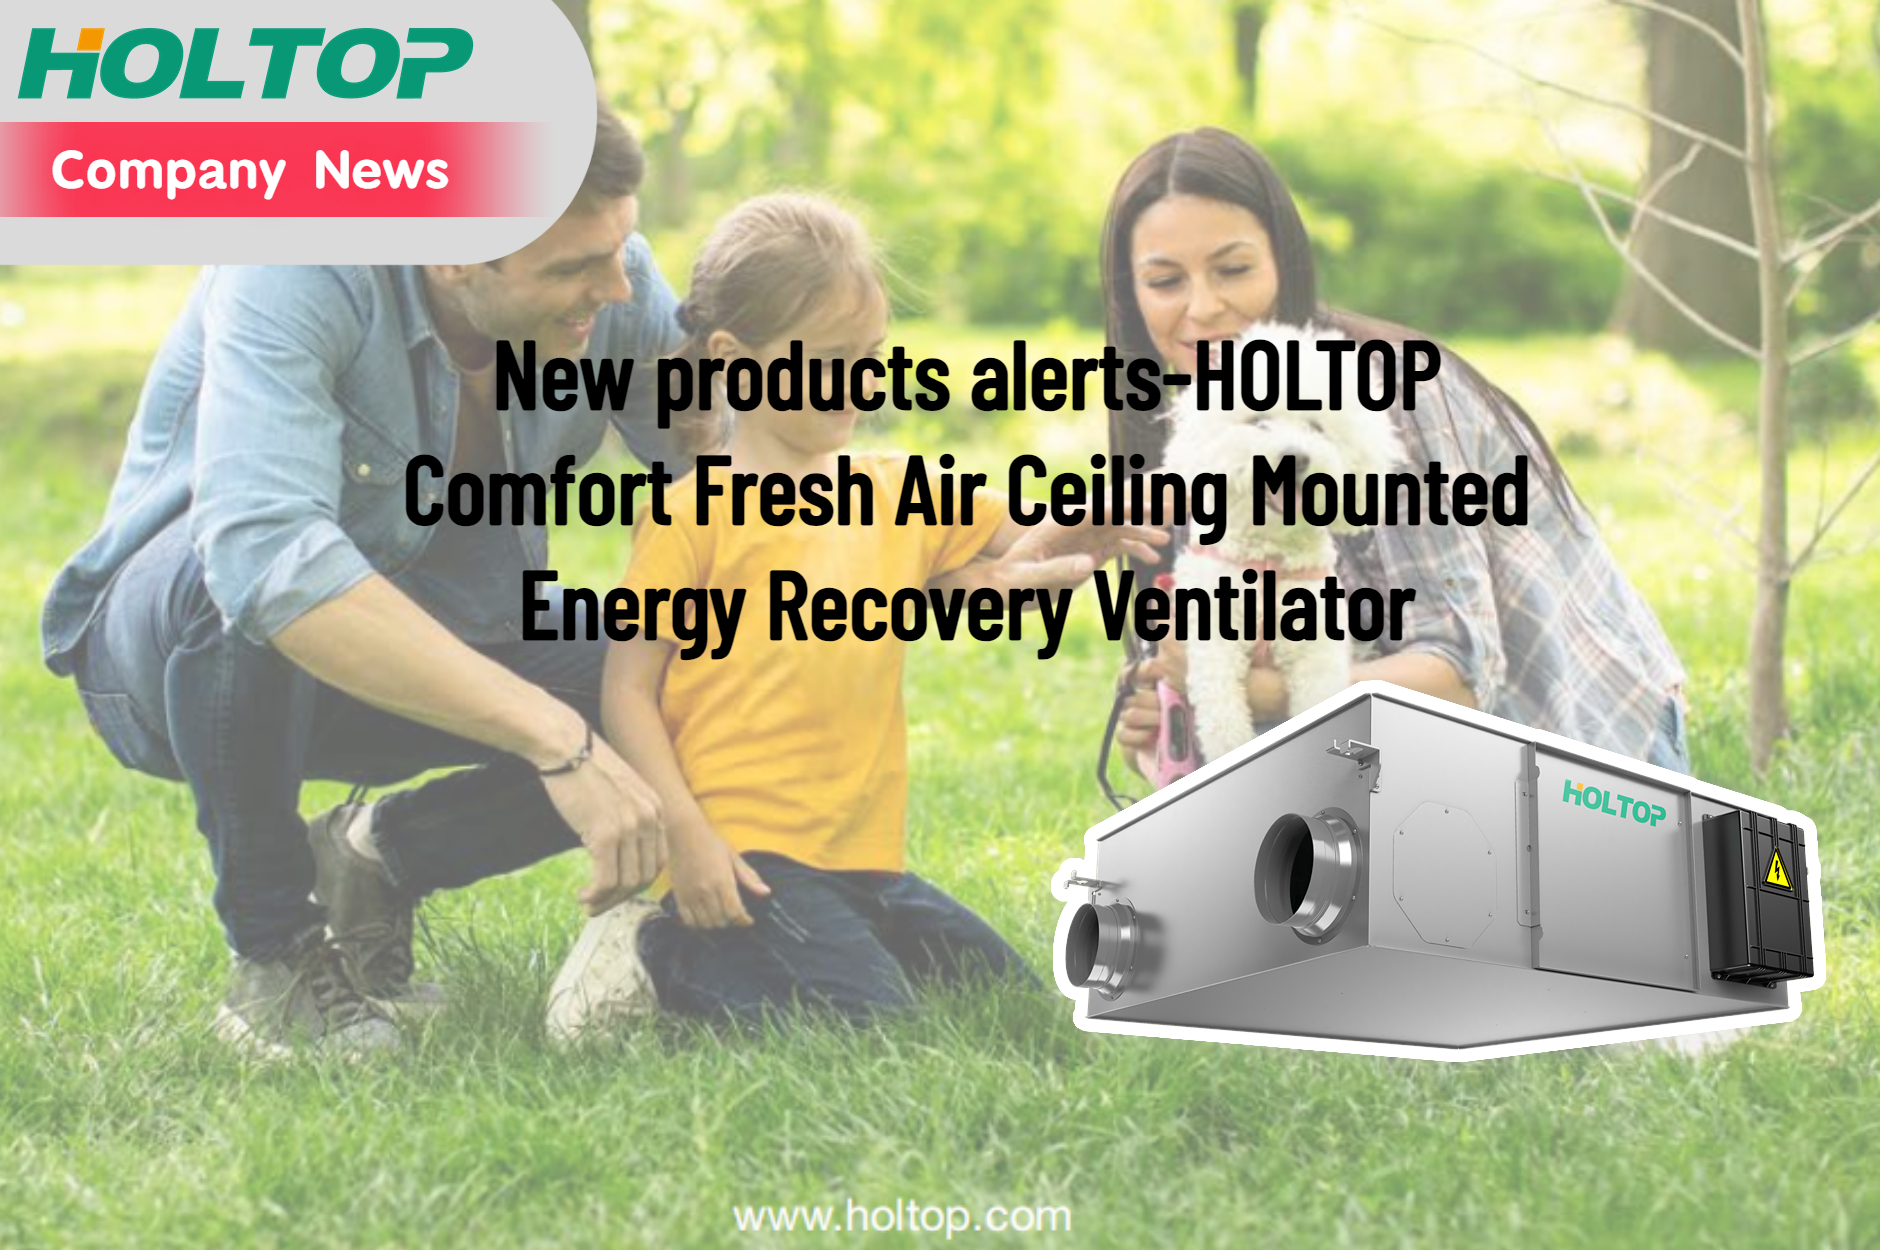 Alertas de novos produtos - Ventilador de recuperação de energia montado no teto para ar fresco HOLTOP Comfort